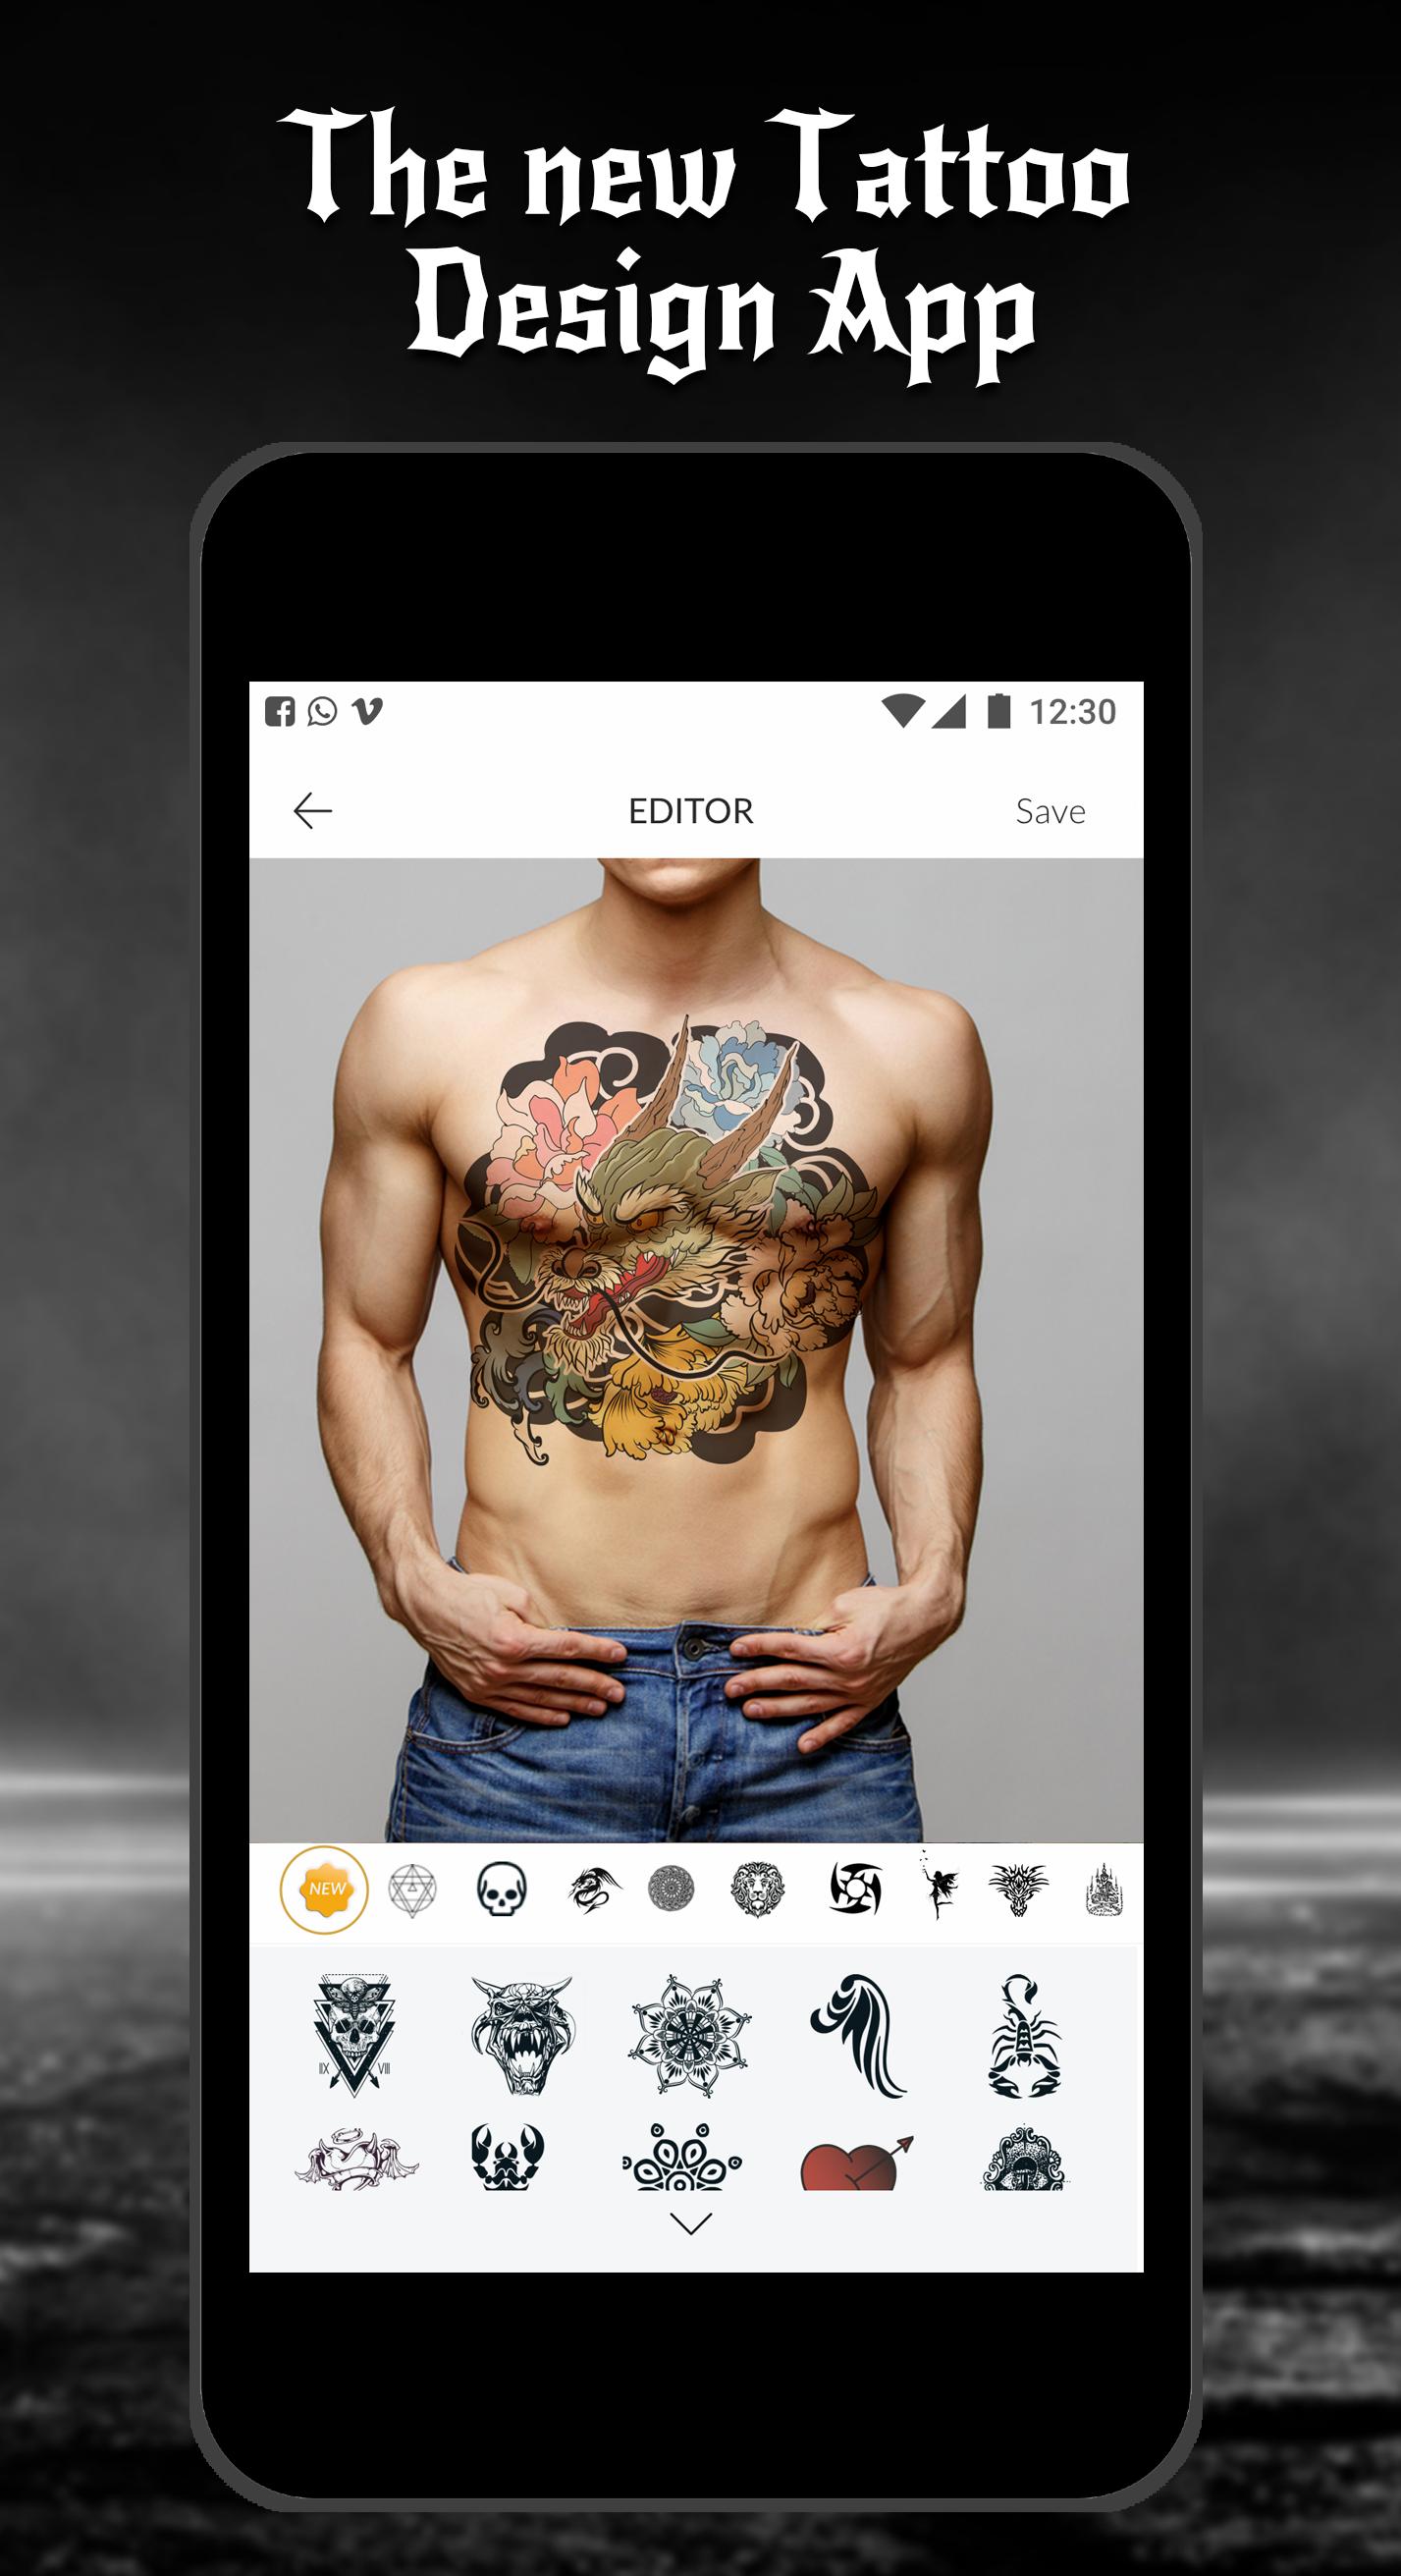 Tattoo Maker: Với ứng dụng Tattoo Maker mới nhất, bạn có thể thiết kế cho mình một chiếc hình xăm độc đáo và sáng tạo. Khám phá và trải nghiệm ngay để tạo nên những hình xăm đẹp nhất, phù hợp với vóc dáng và phong cách của mình.